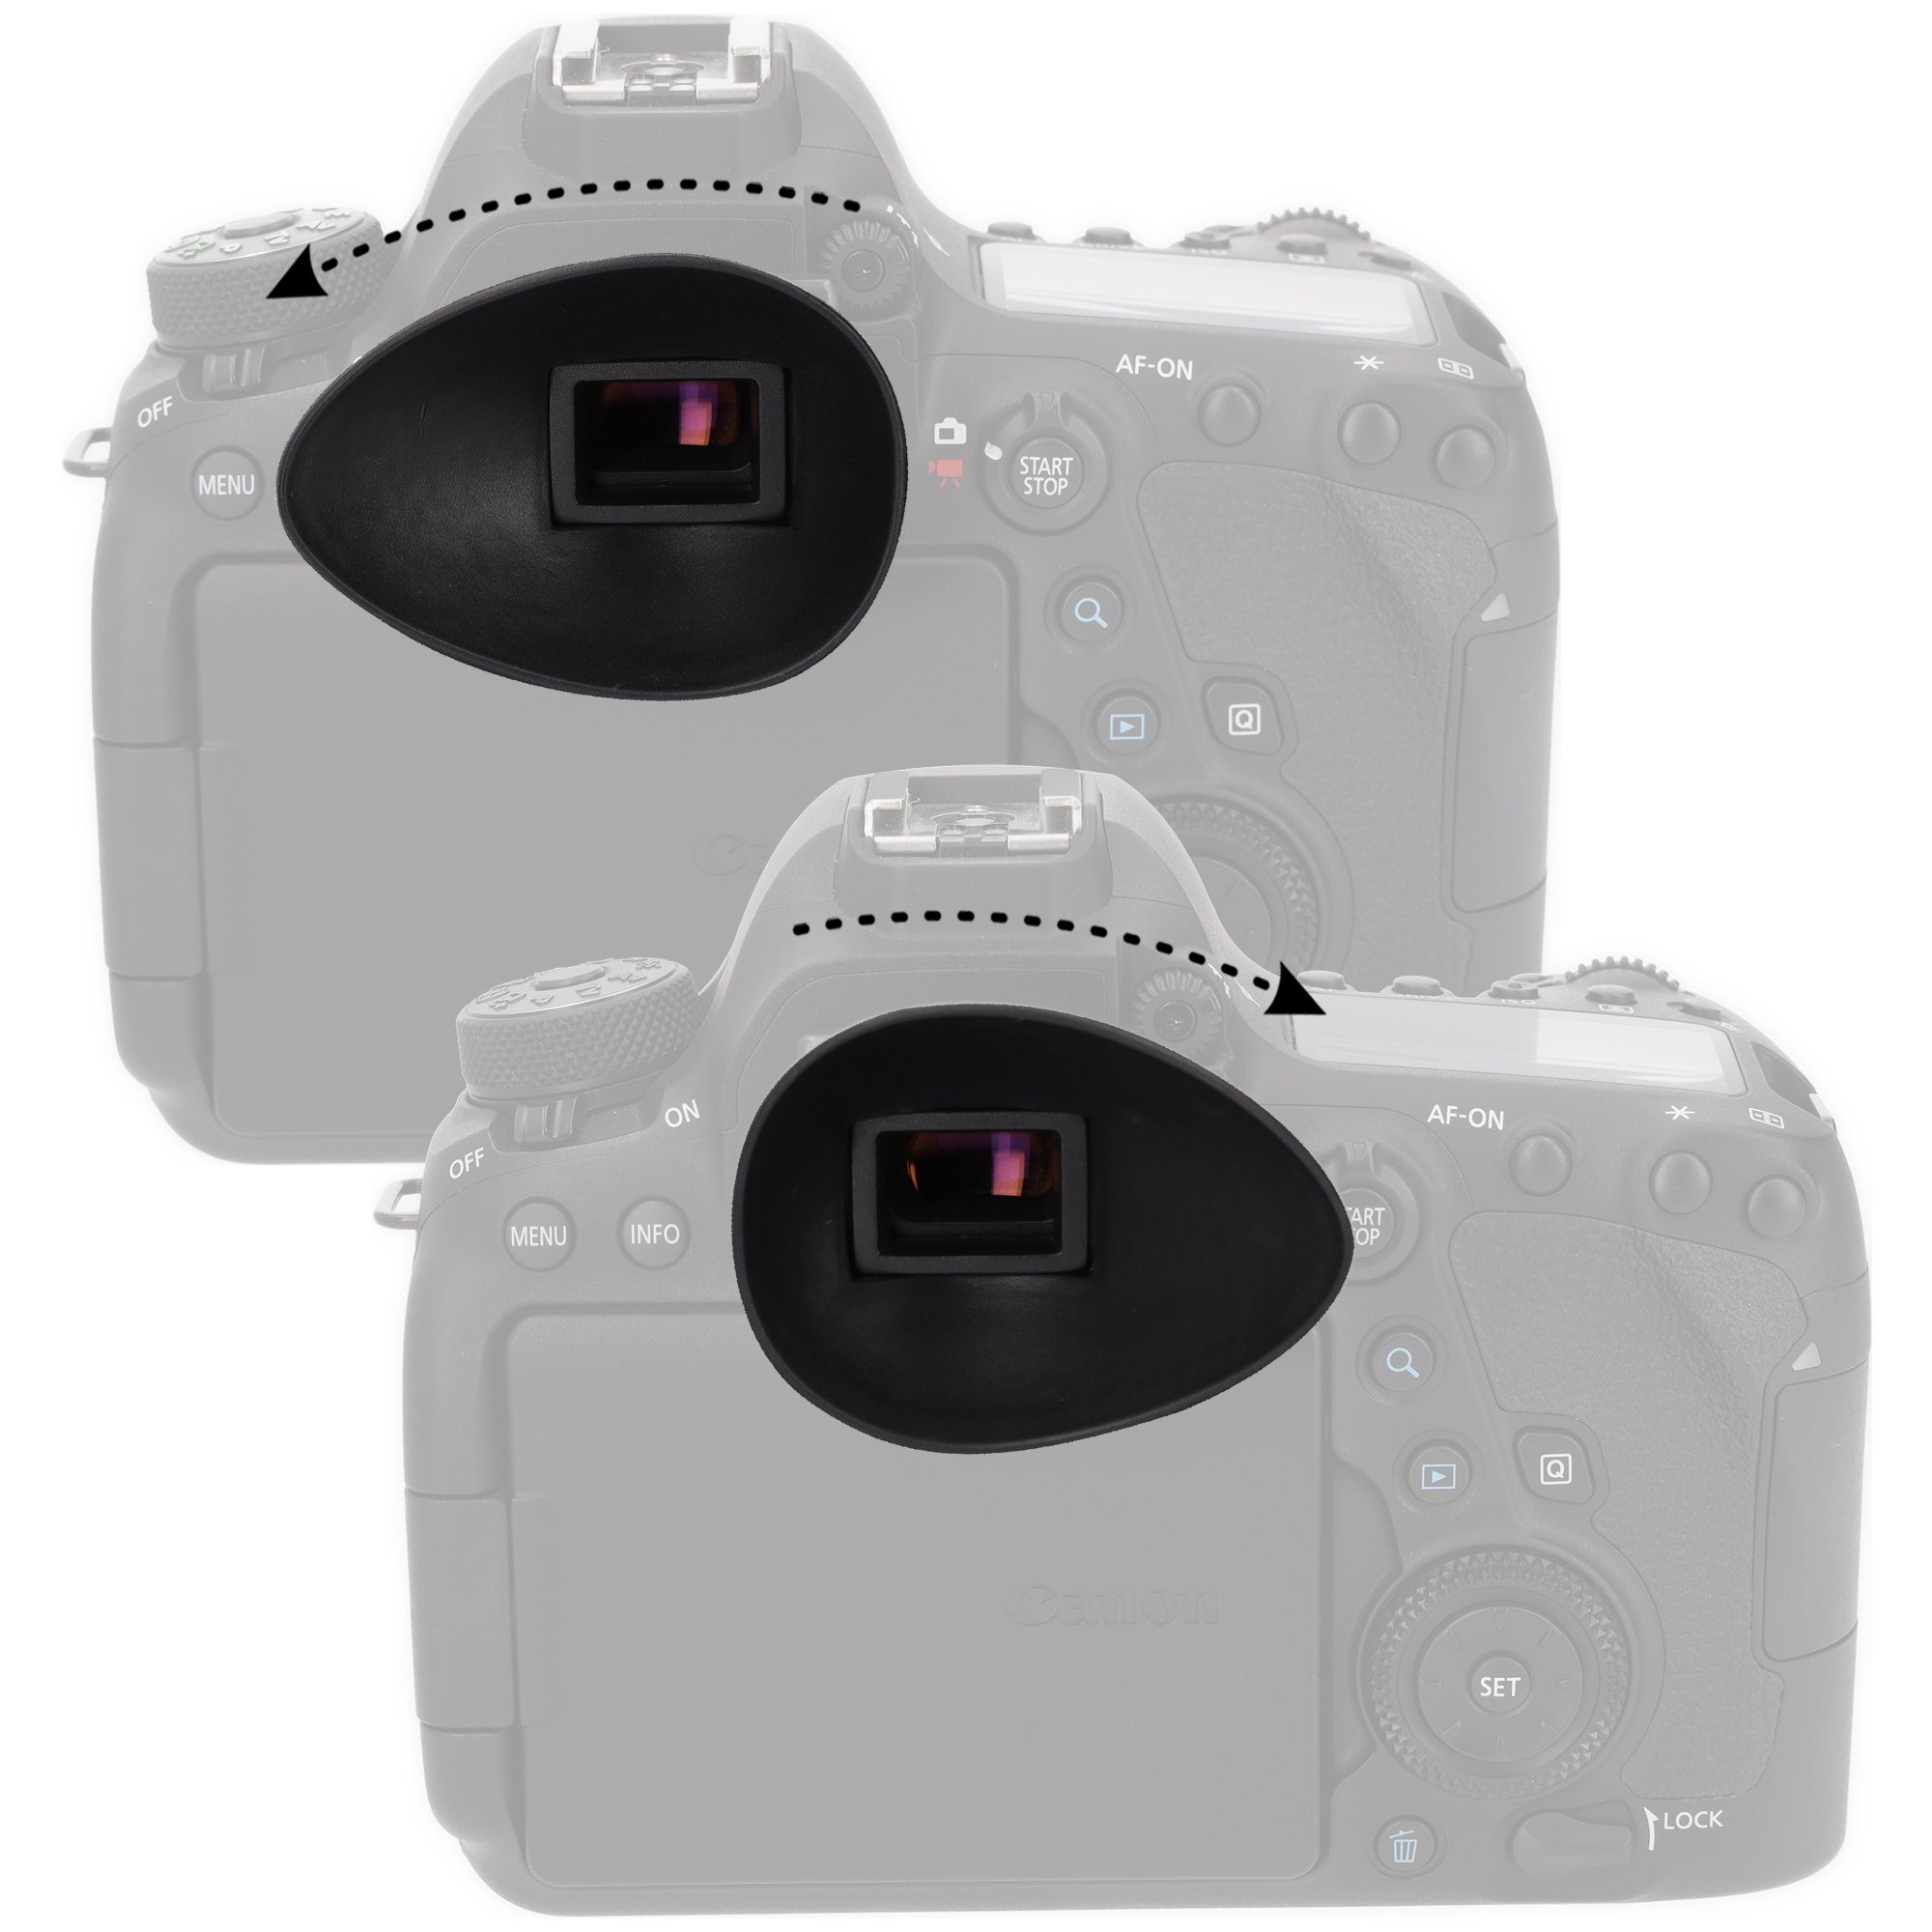 Nikon Aufstecksucher zBD3100 ayex D90 D300s D40x D7000 Augenmuschel 22mm D5000 Tropfenform